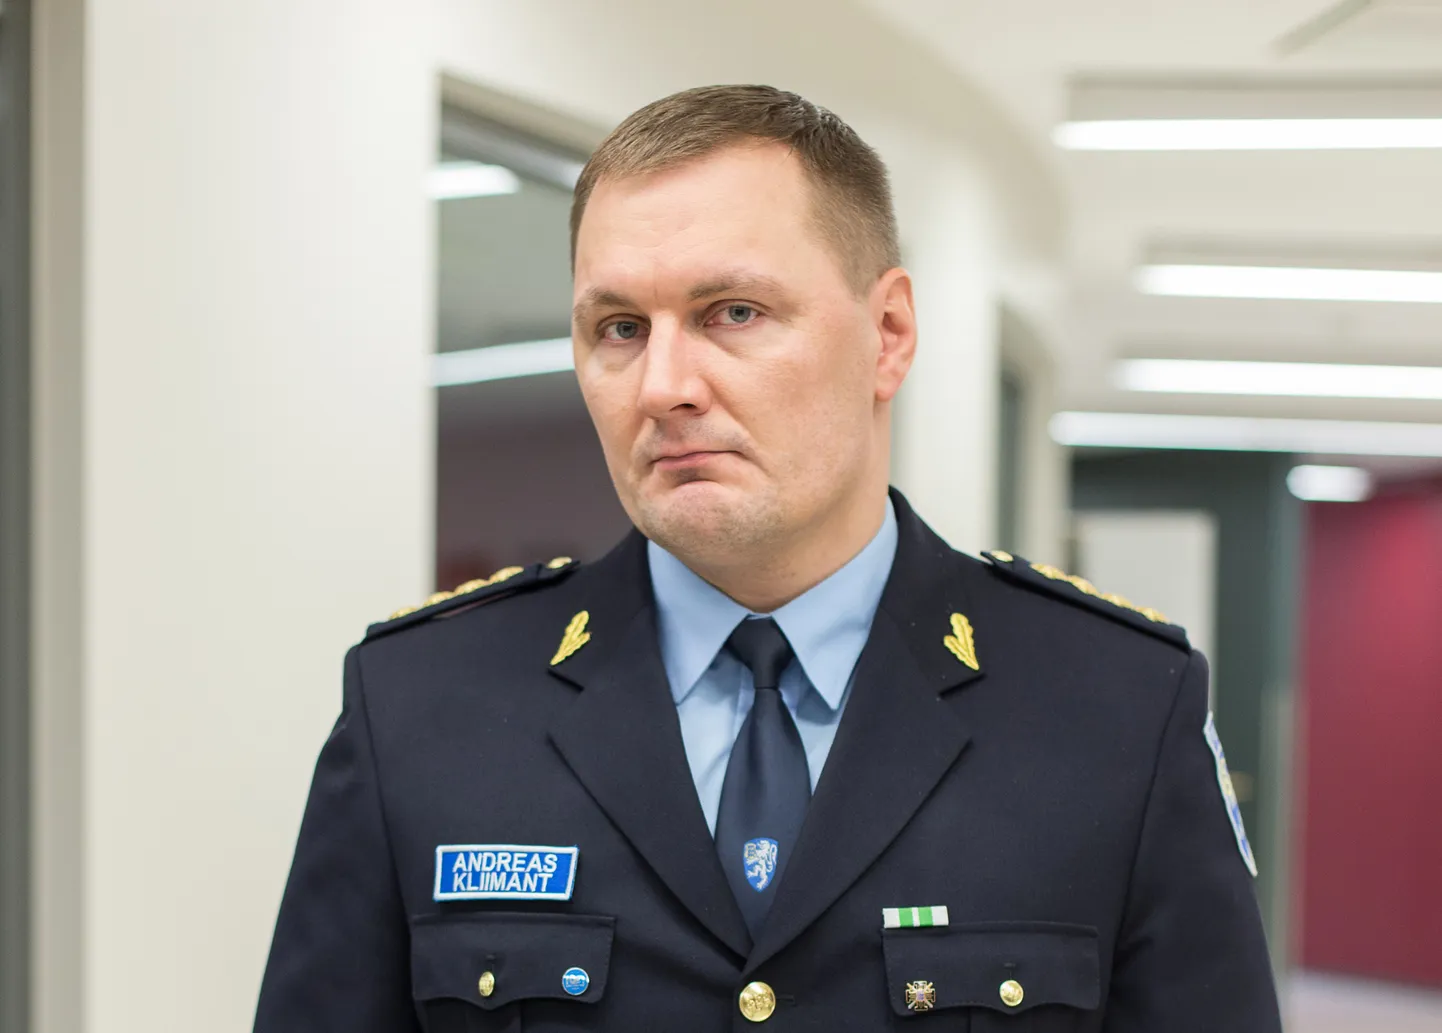 Jõhvi politseijaoskonna juht Andreas Kliimant.